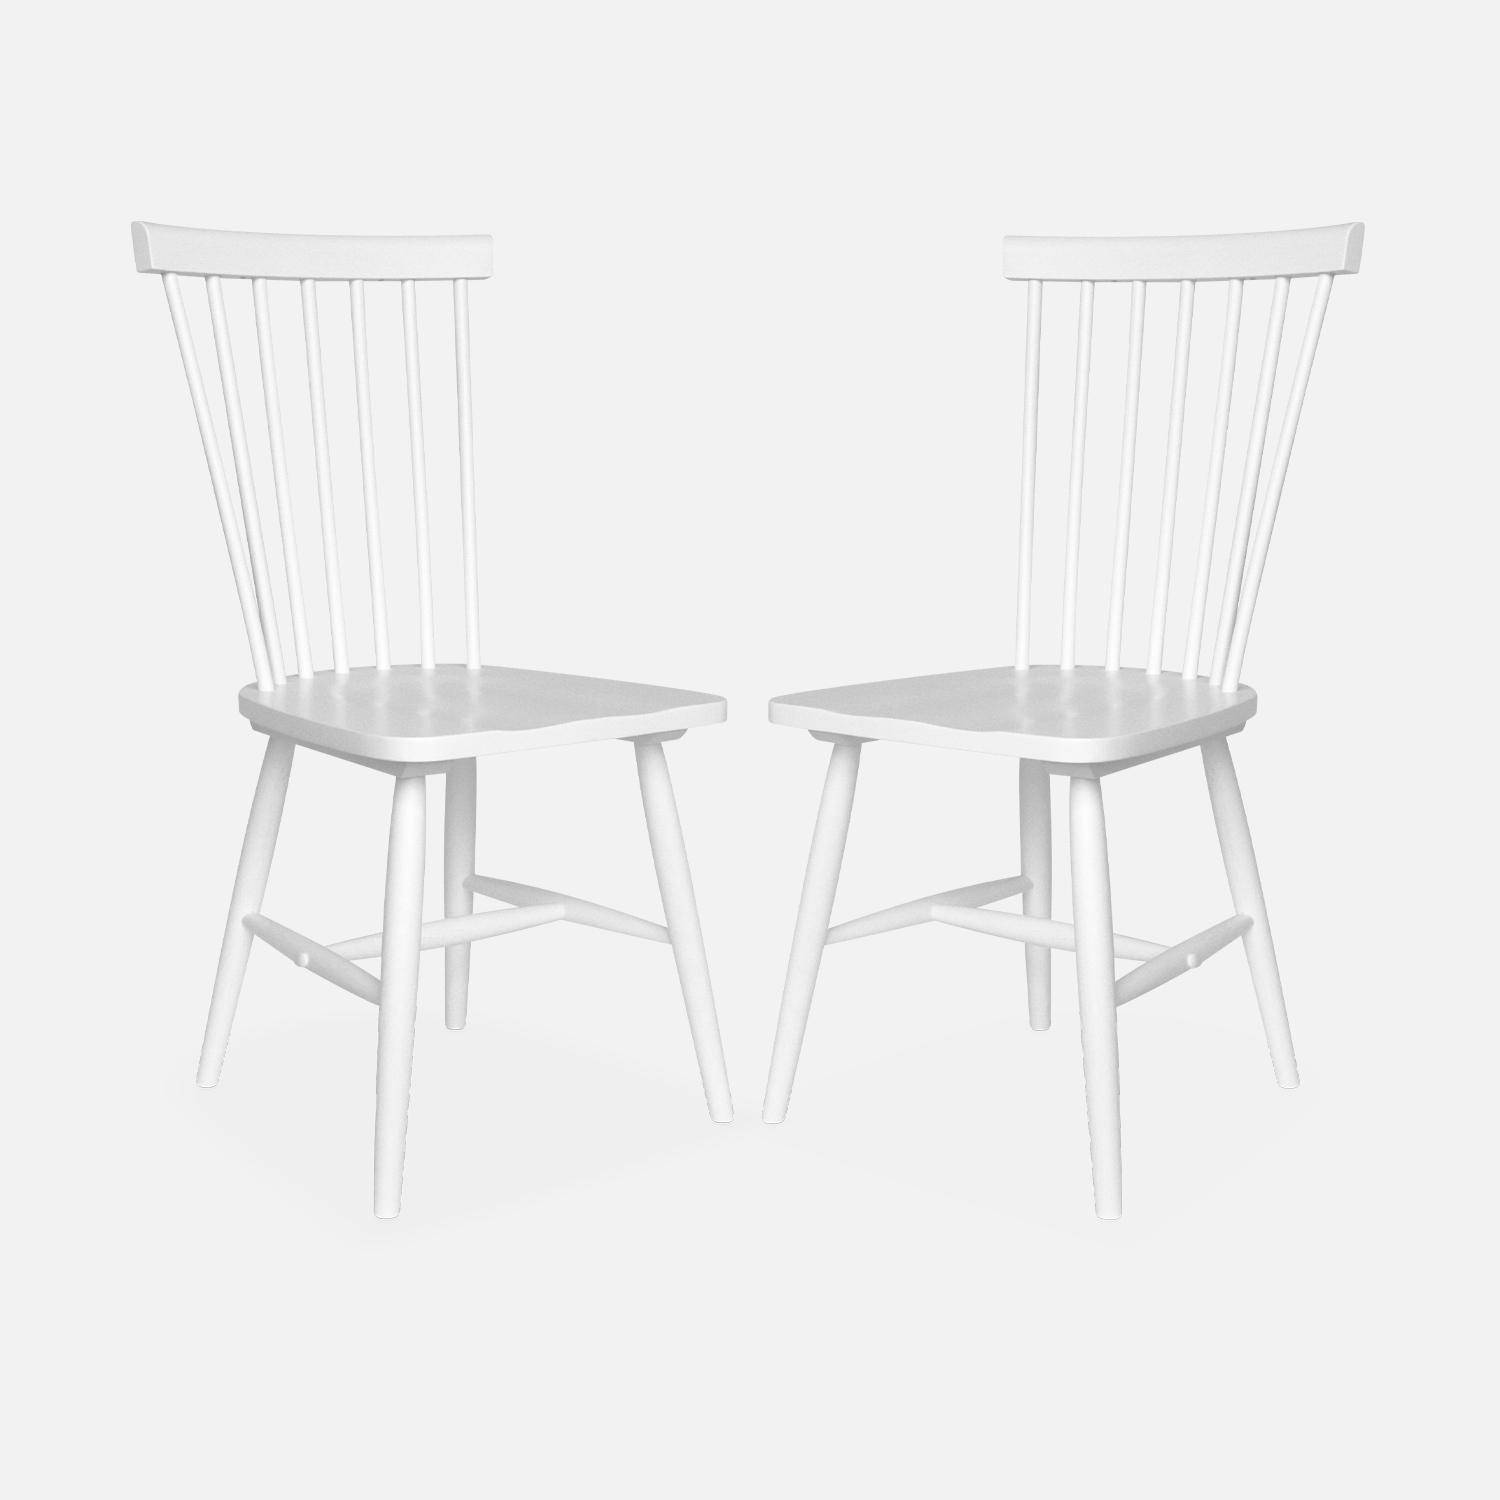 Set di 2 sedie da bar in legno di gomma bianco, ROMIE, L 50,8 x P 44,2 x H 90 cm. Consegna gratuita, garanzia di 2 anni, miglior prezzo garantito! Photo4